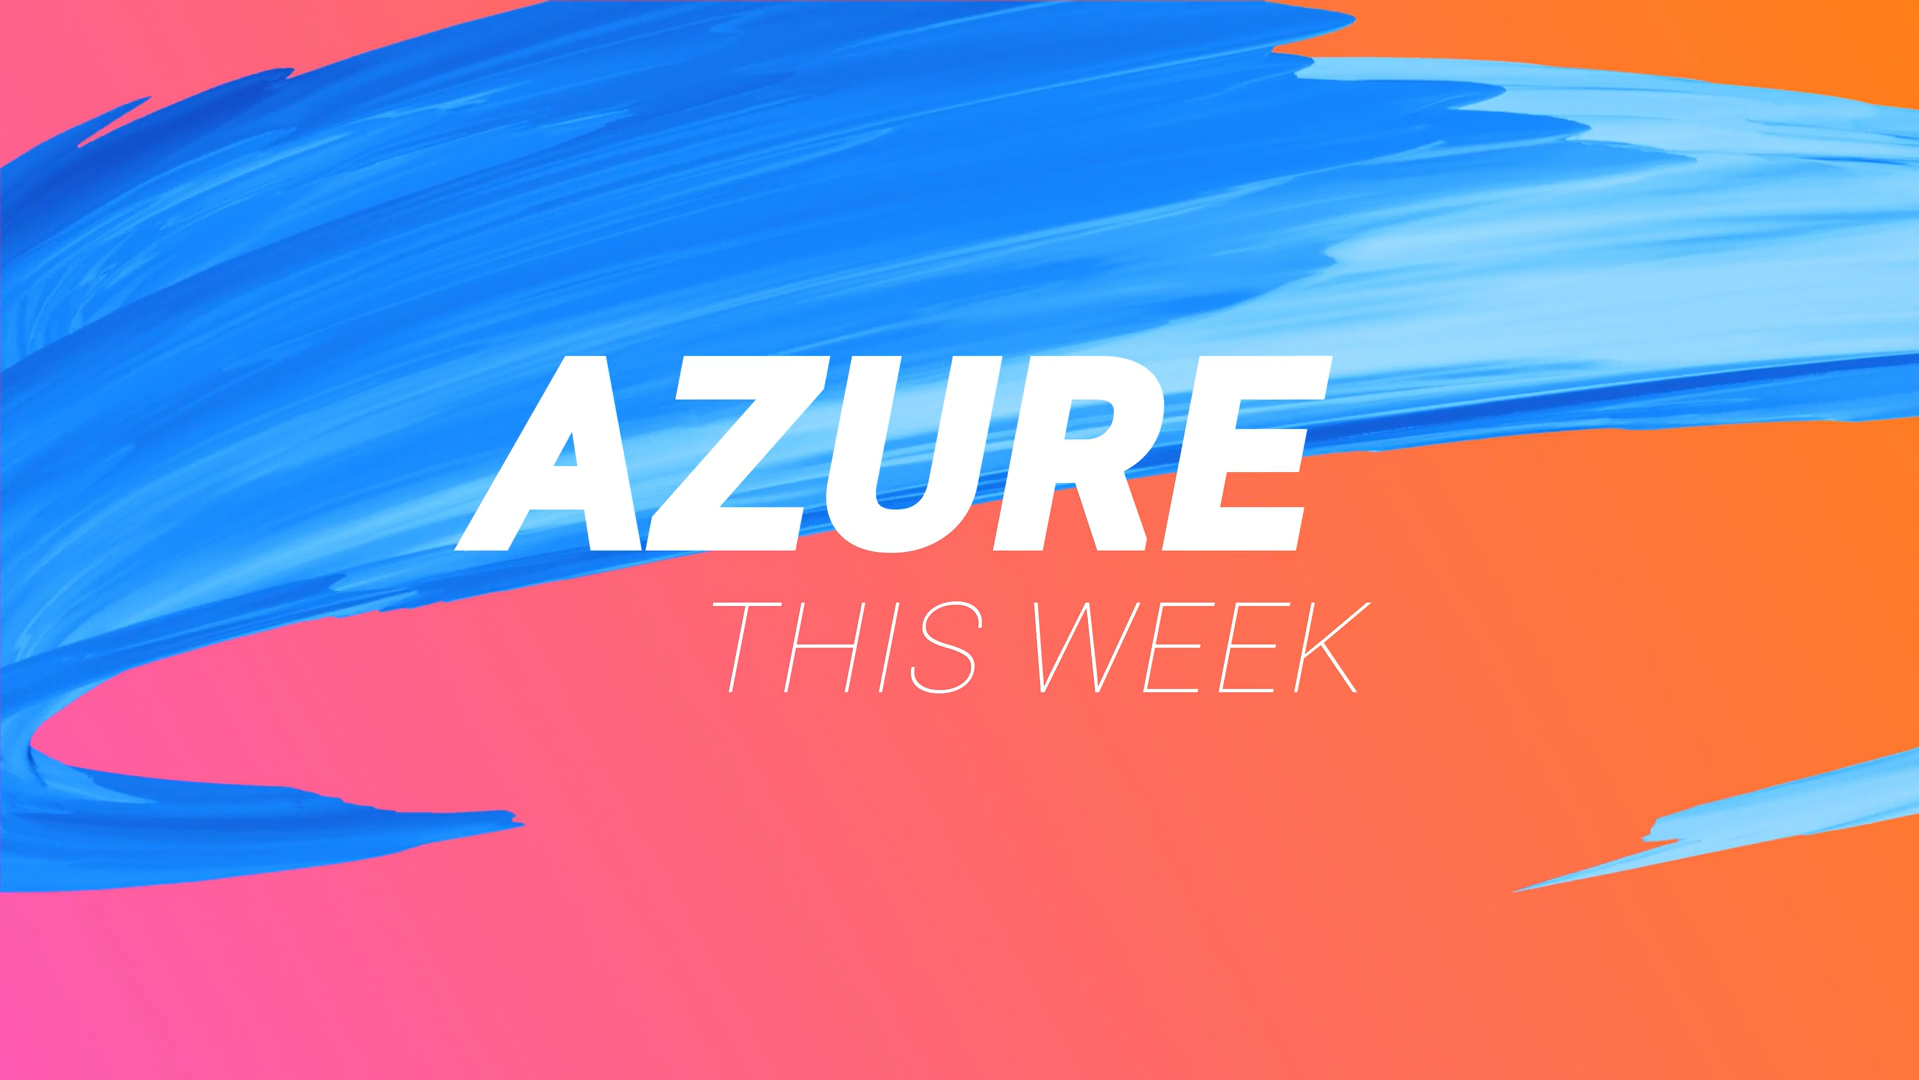 Azure this week image